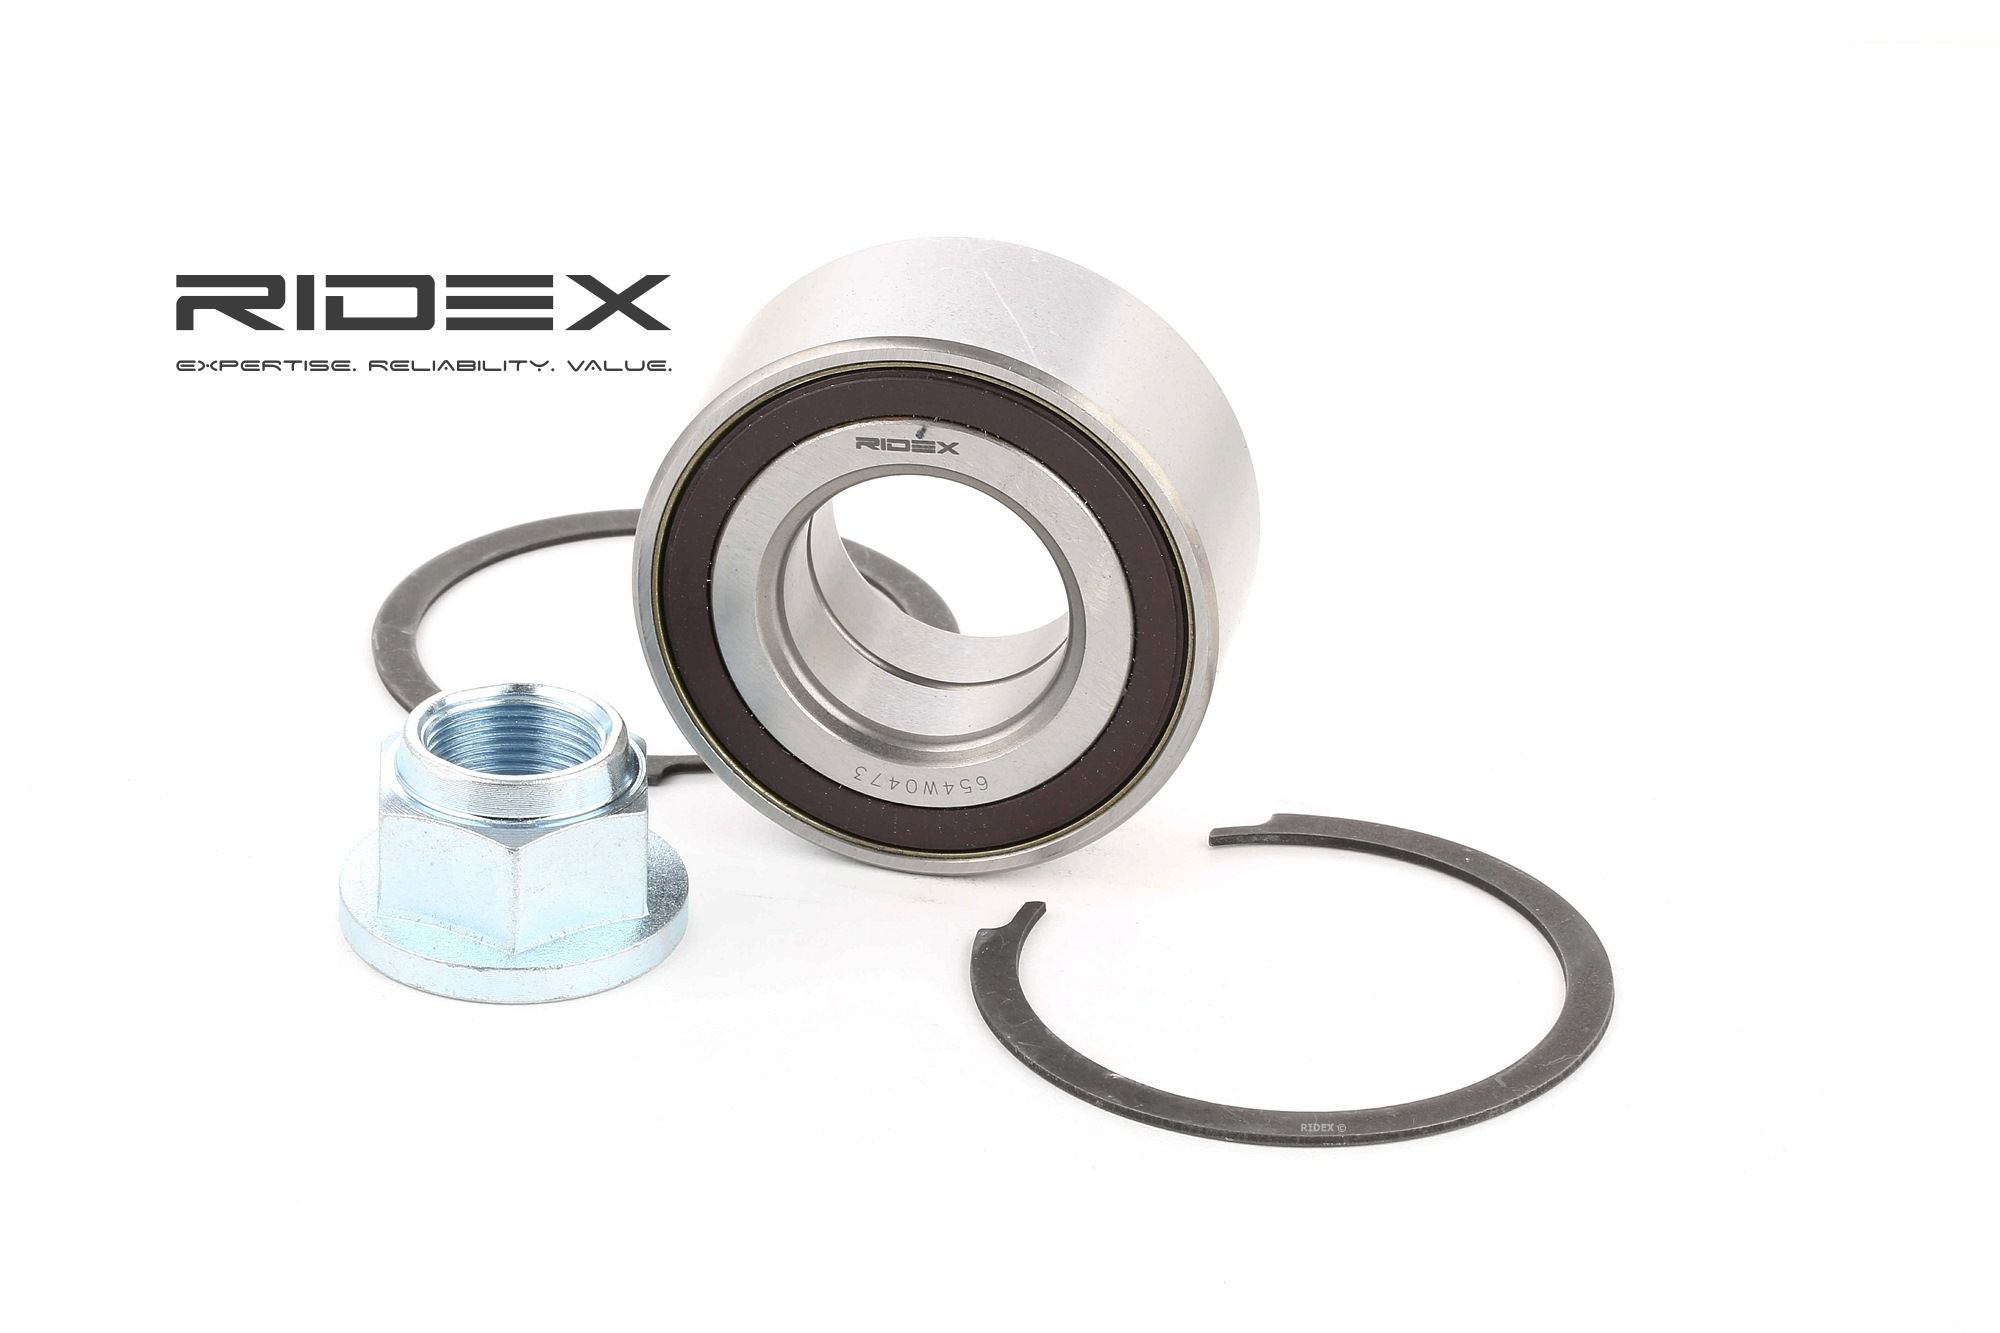 Comprare 654W0473 RIDEX Assale anteriore, Dx, Sx, con anello sensore magnetico integrato Kit cuscinetto ruota 654W0473 poco costoso